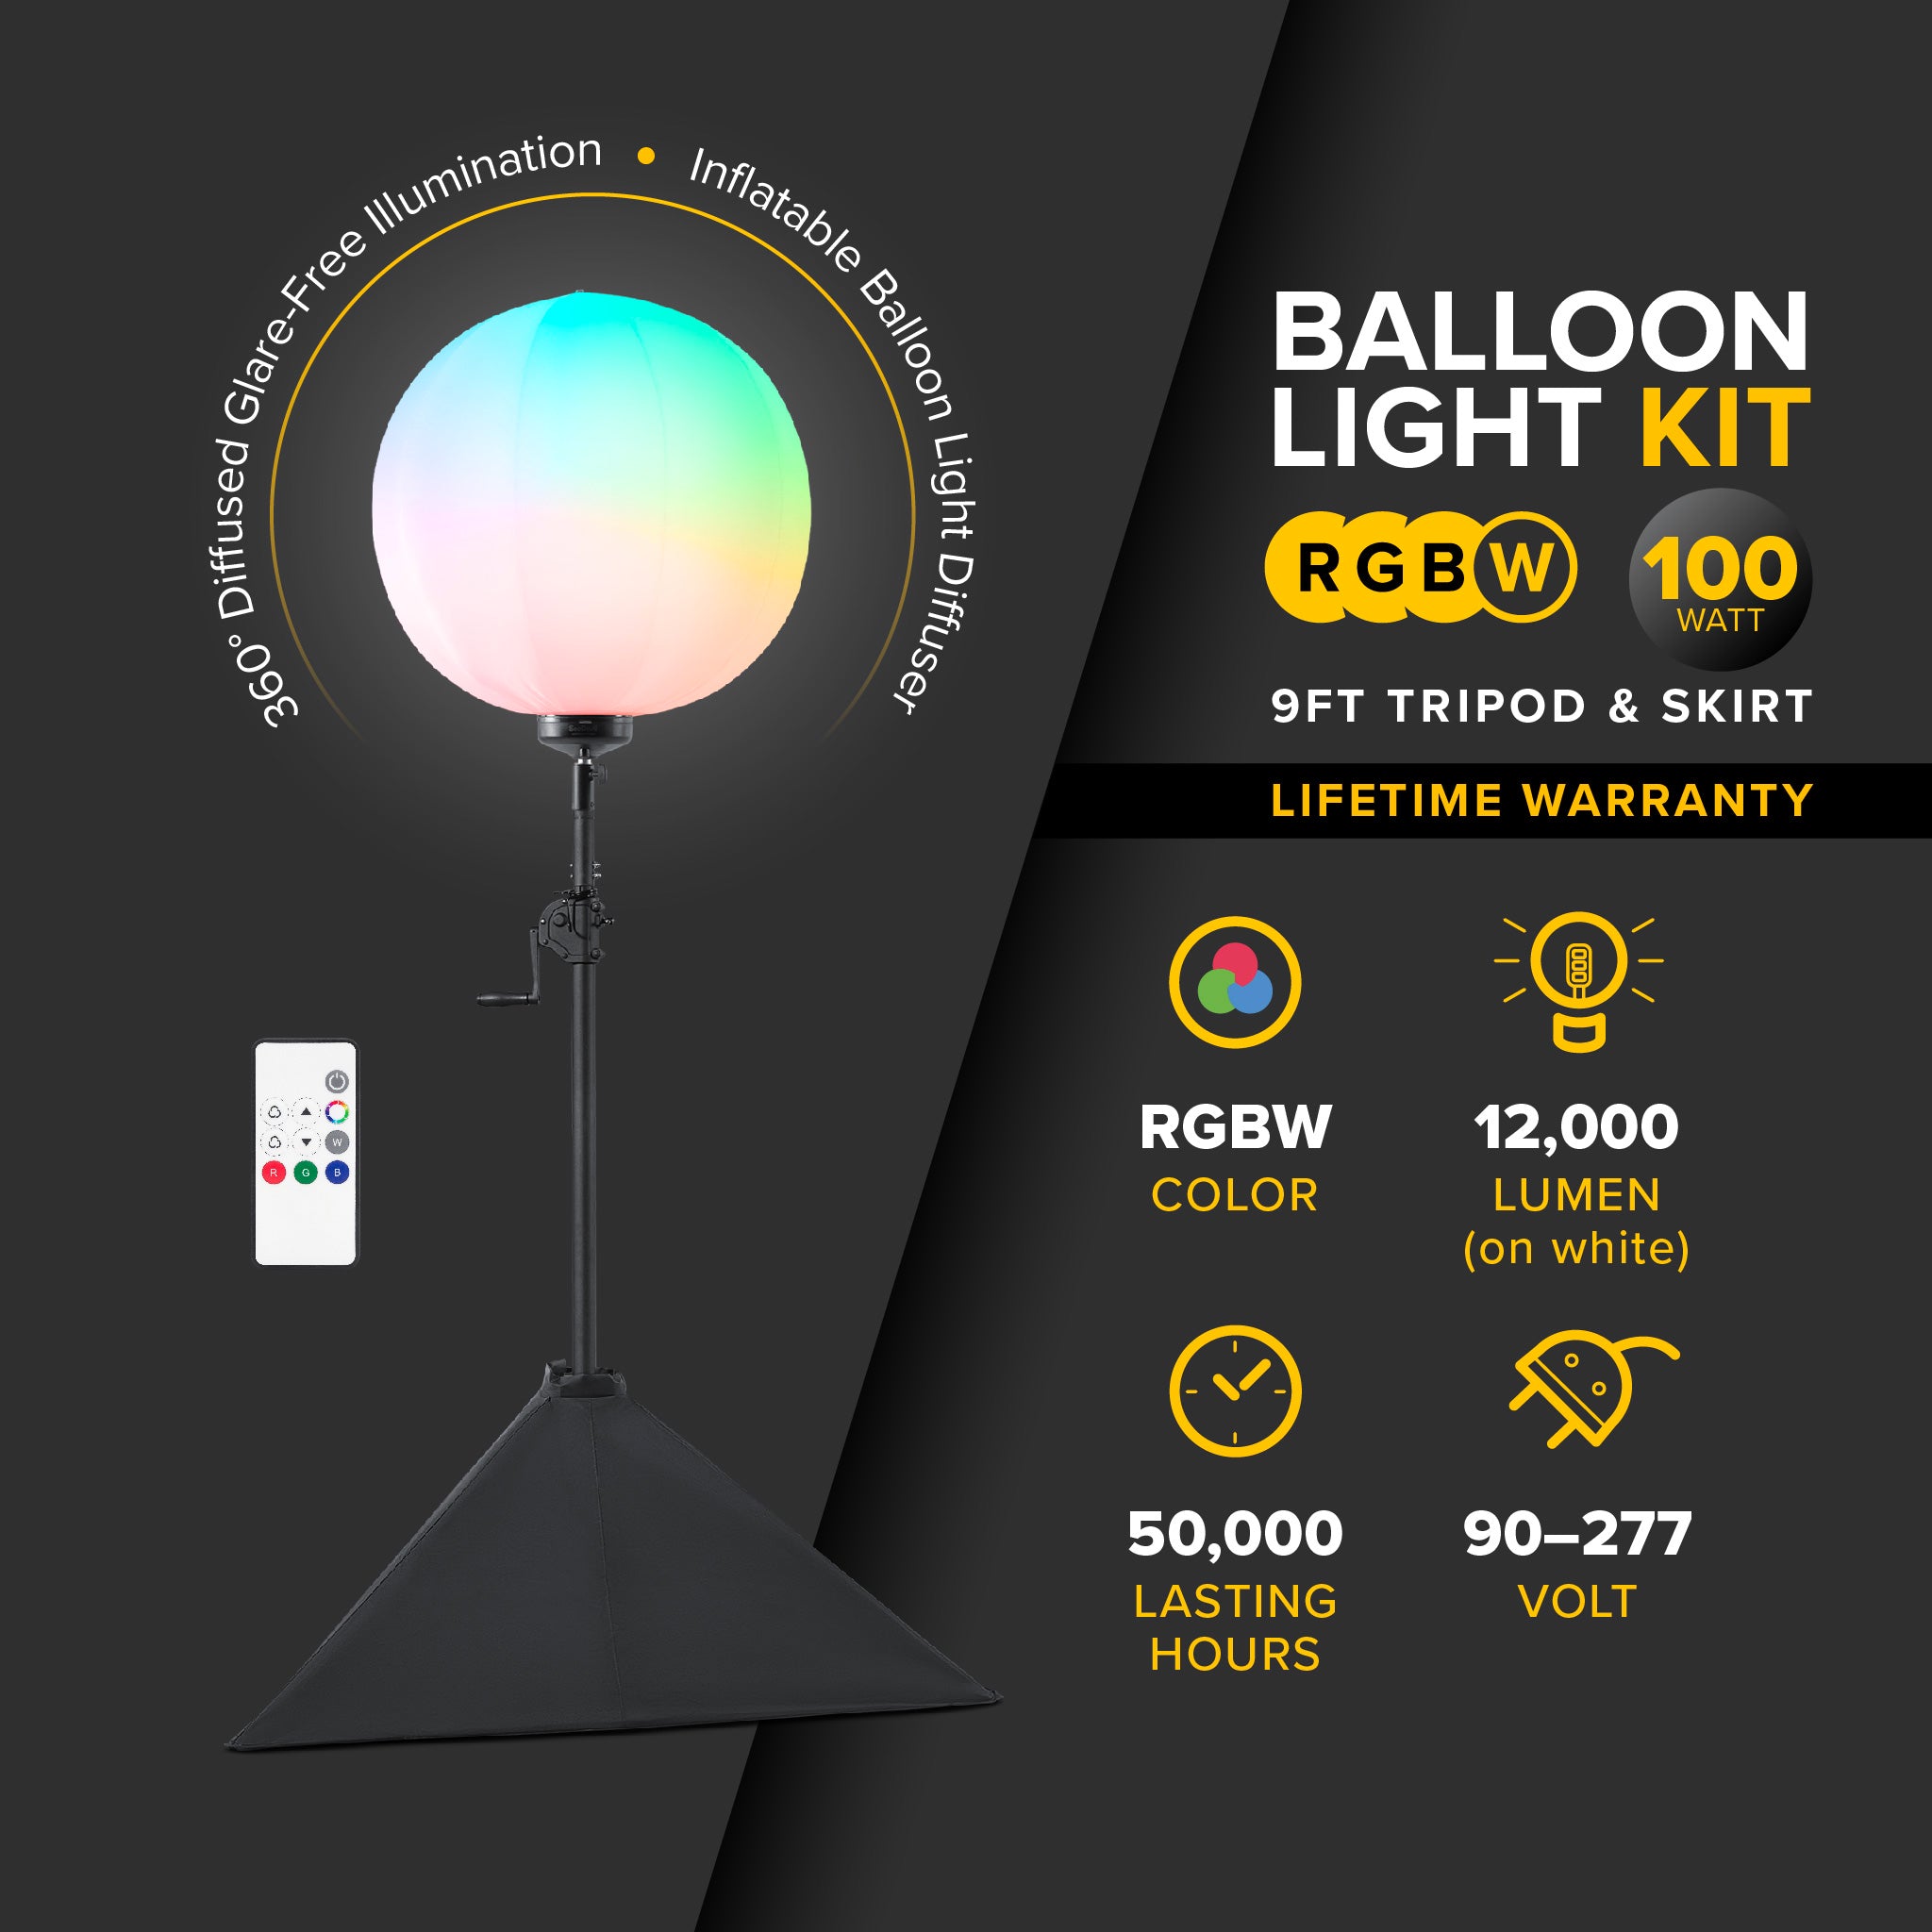 G3 Heavy-Duty 100 Watt RGBW Balloon Light Kit